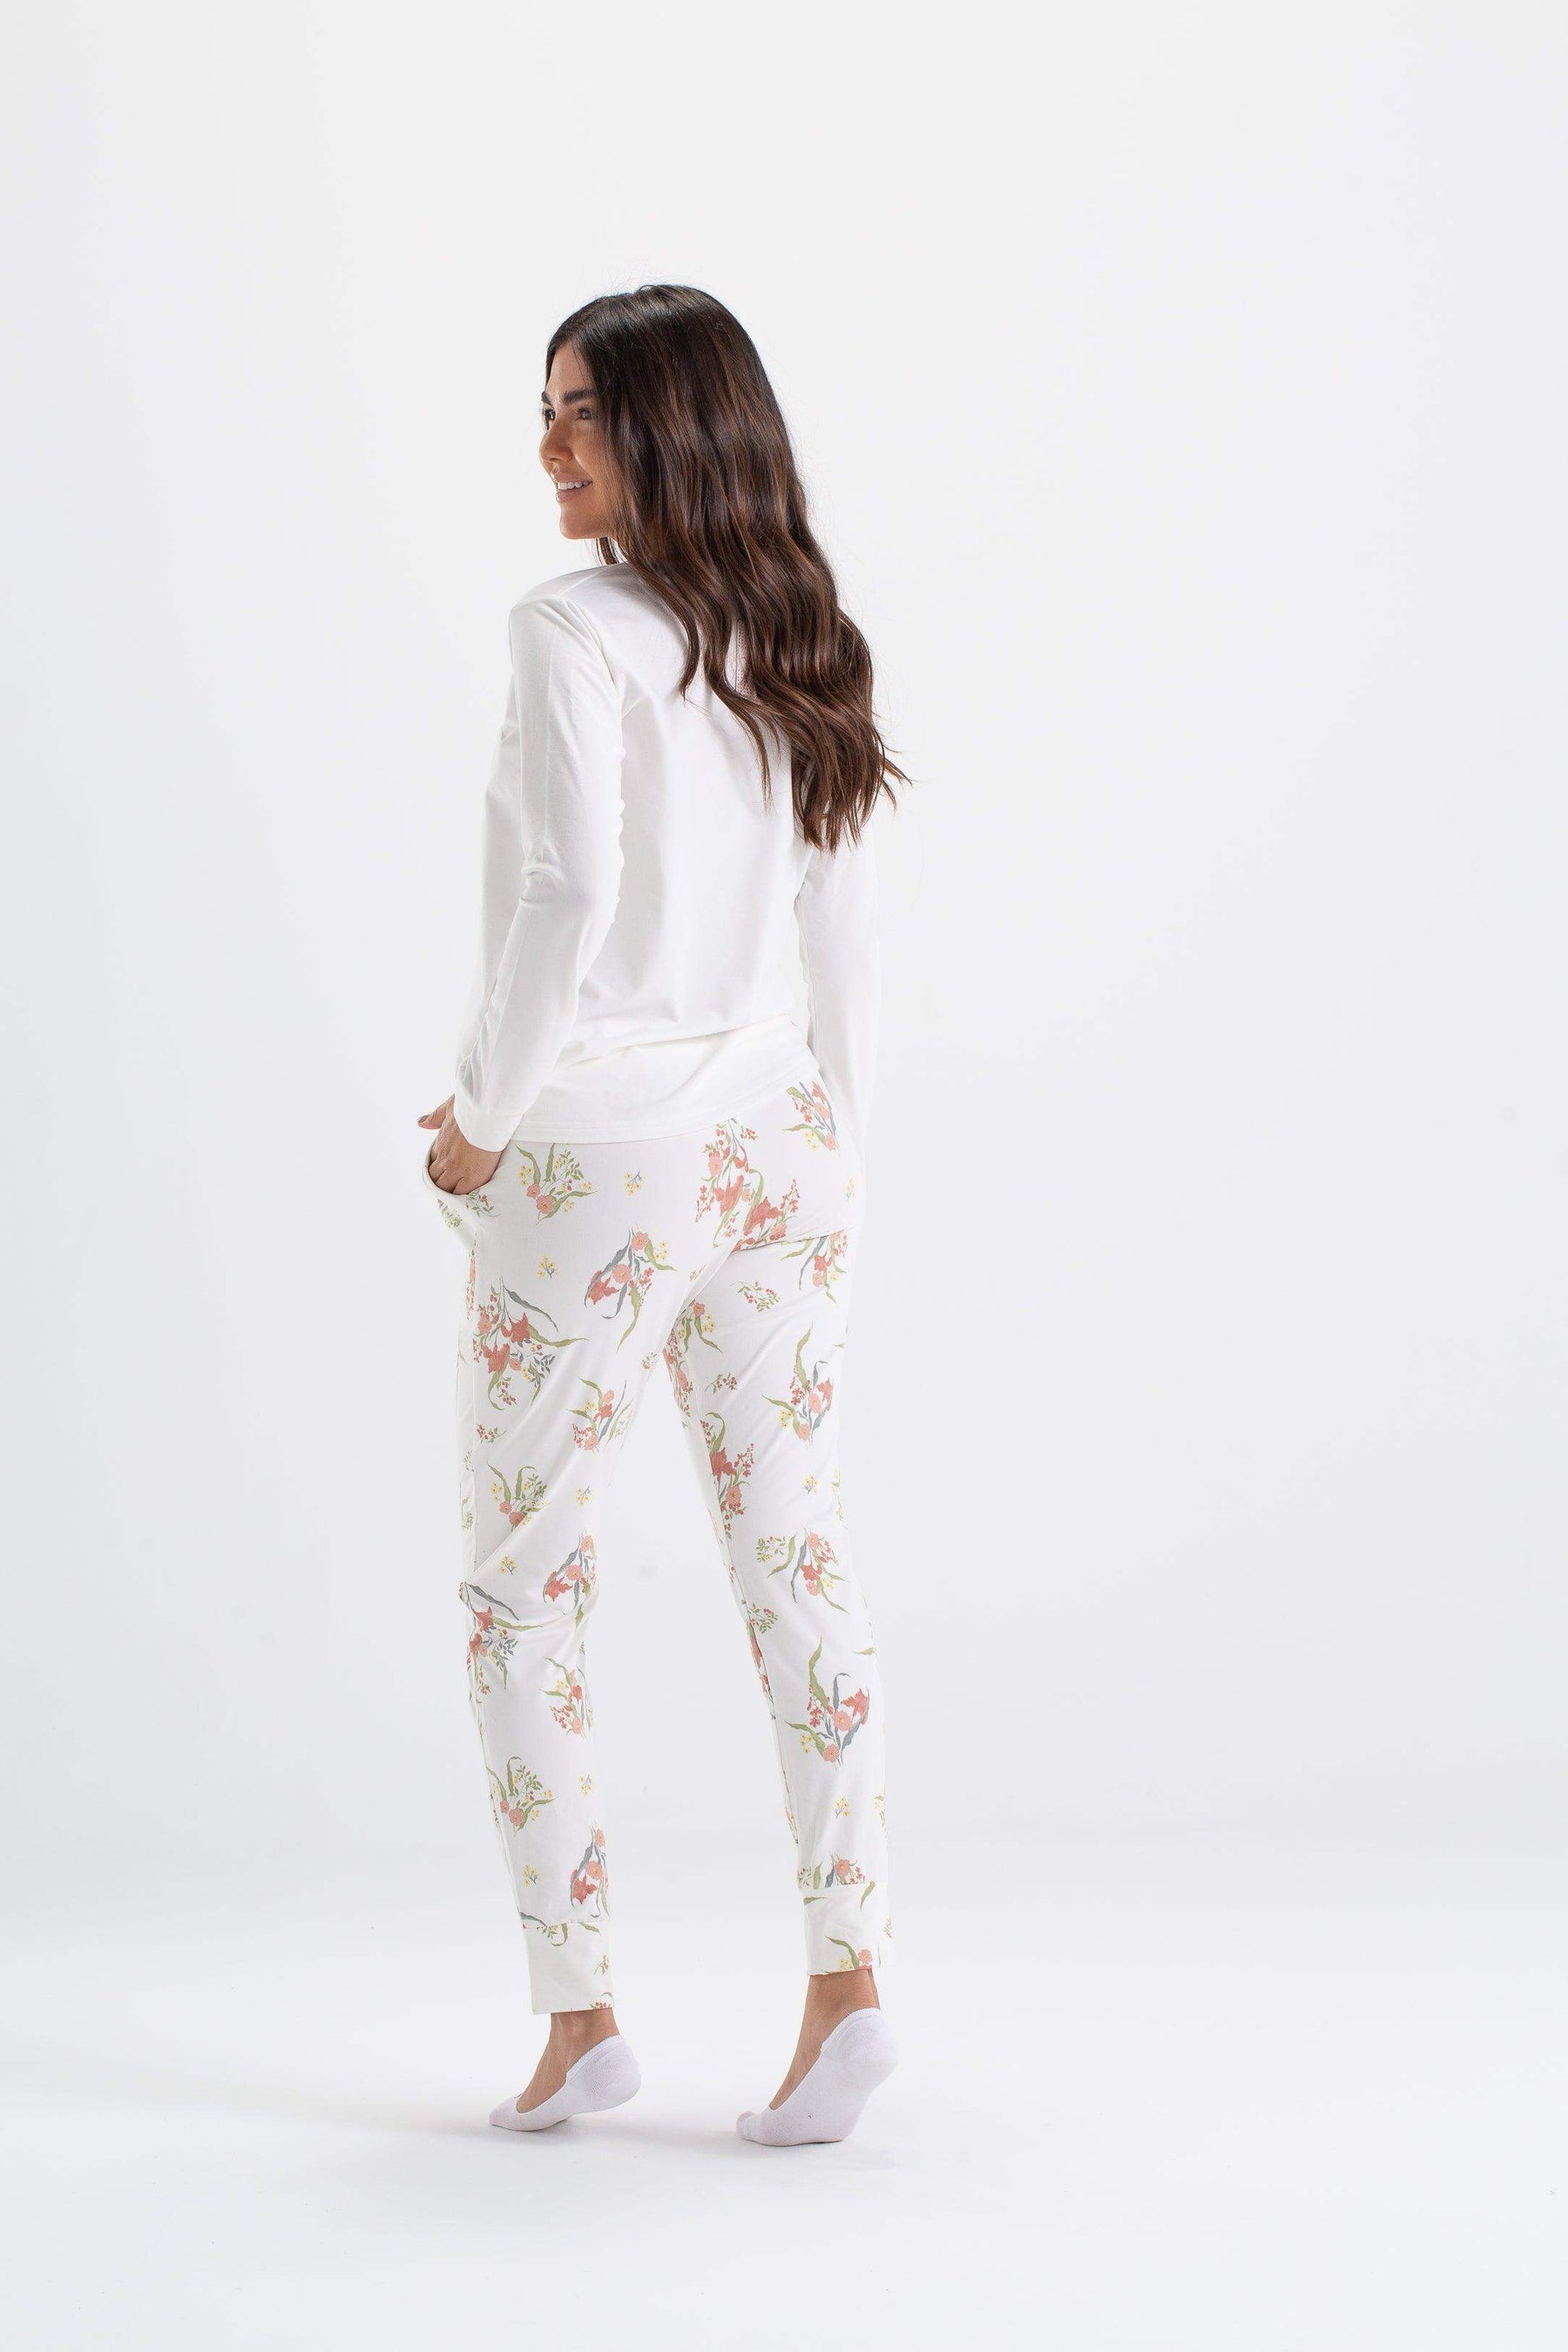 Floral Pyjama Set with Plain Top - Carina - كارينا